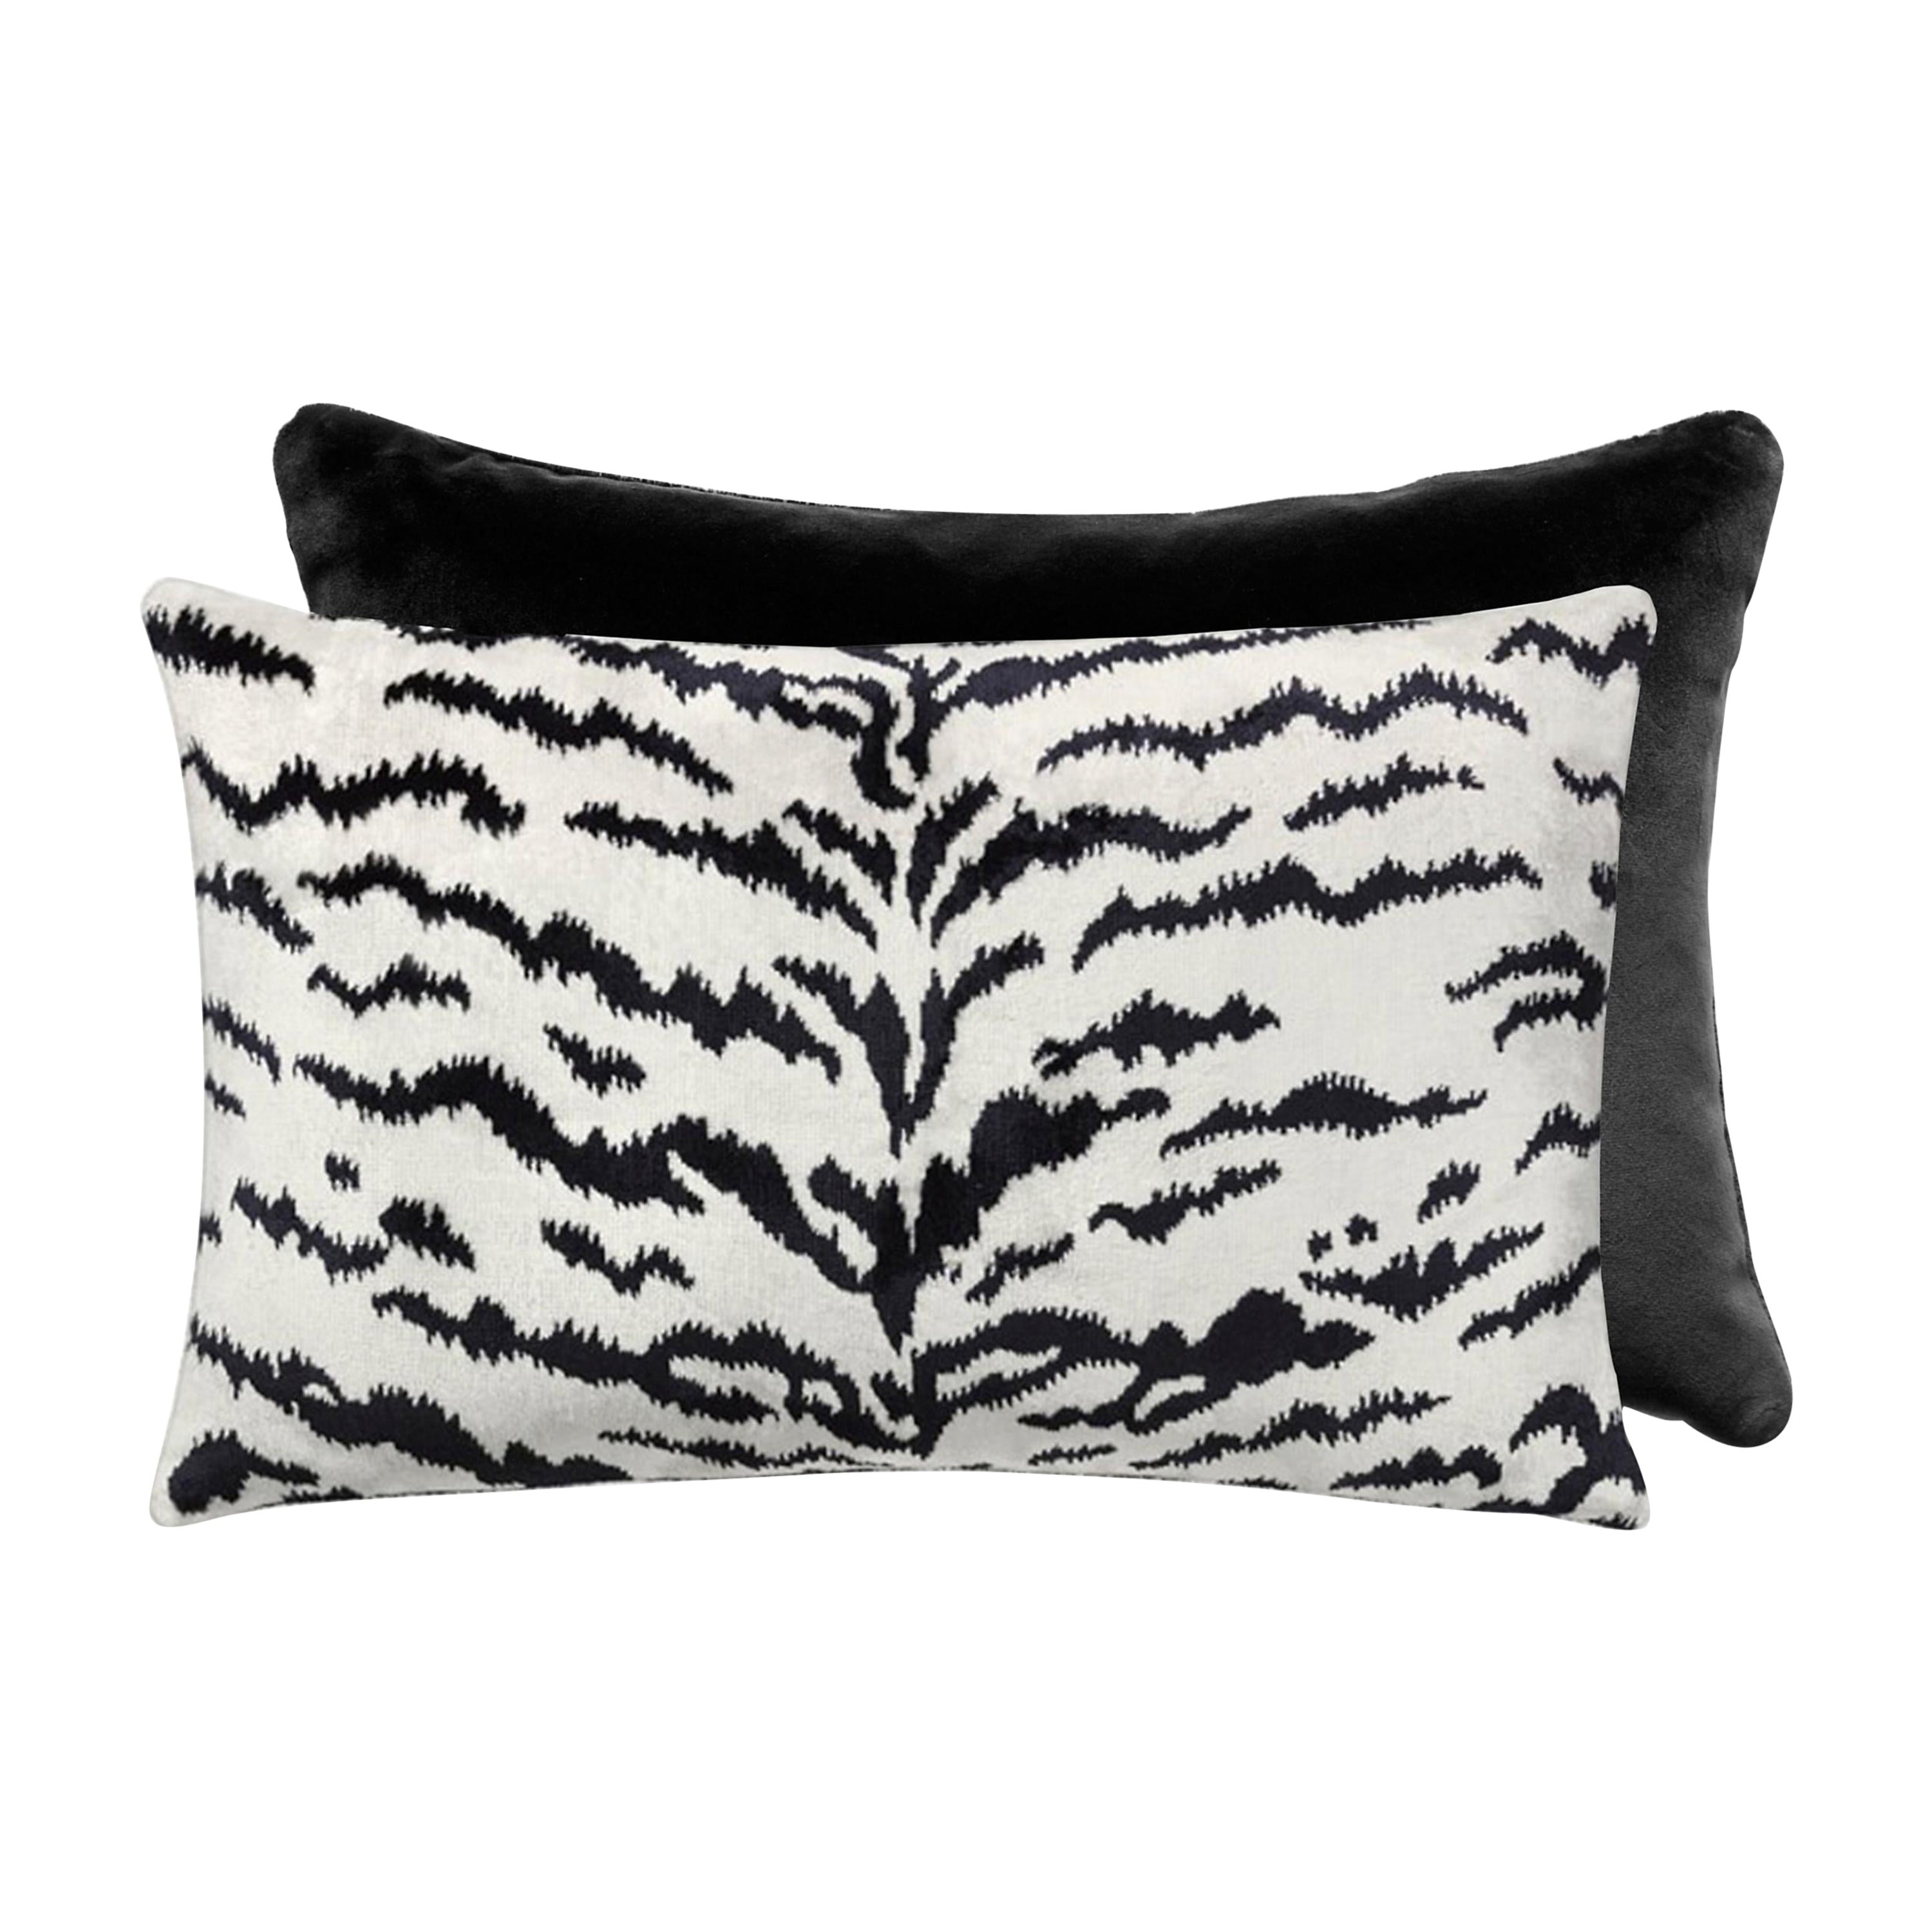 Tigre/Indus Lumbar Pillow For Sale